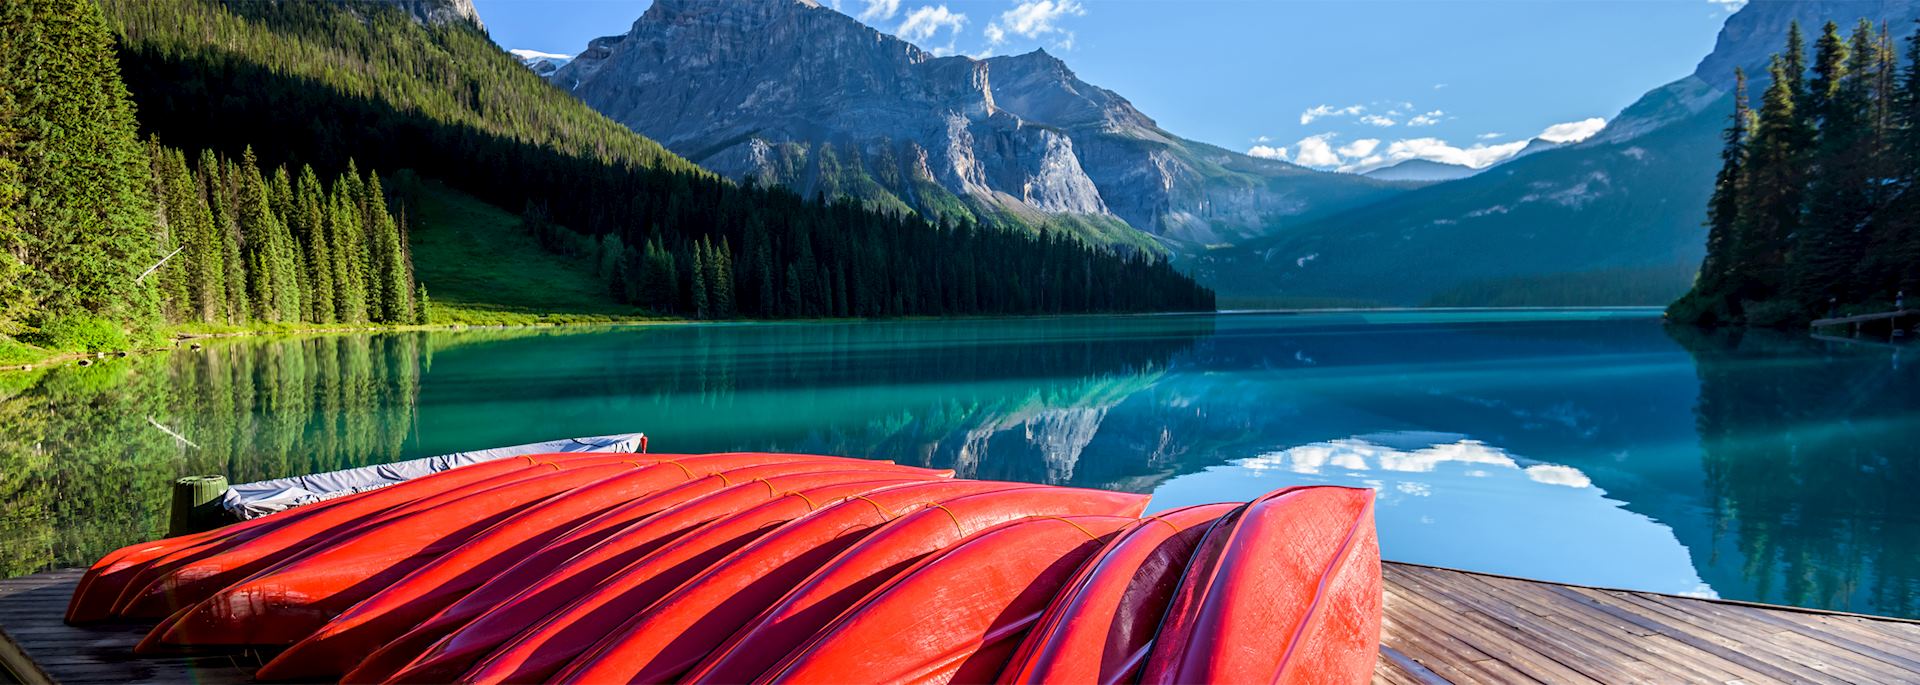 Kayaks at Emerald Lake